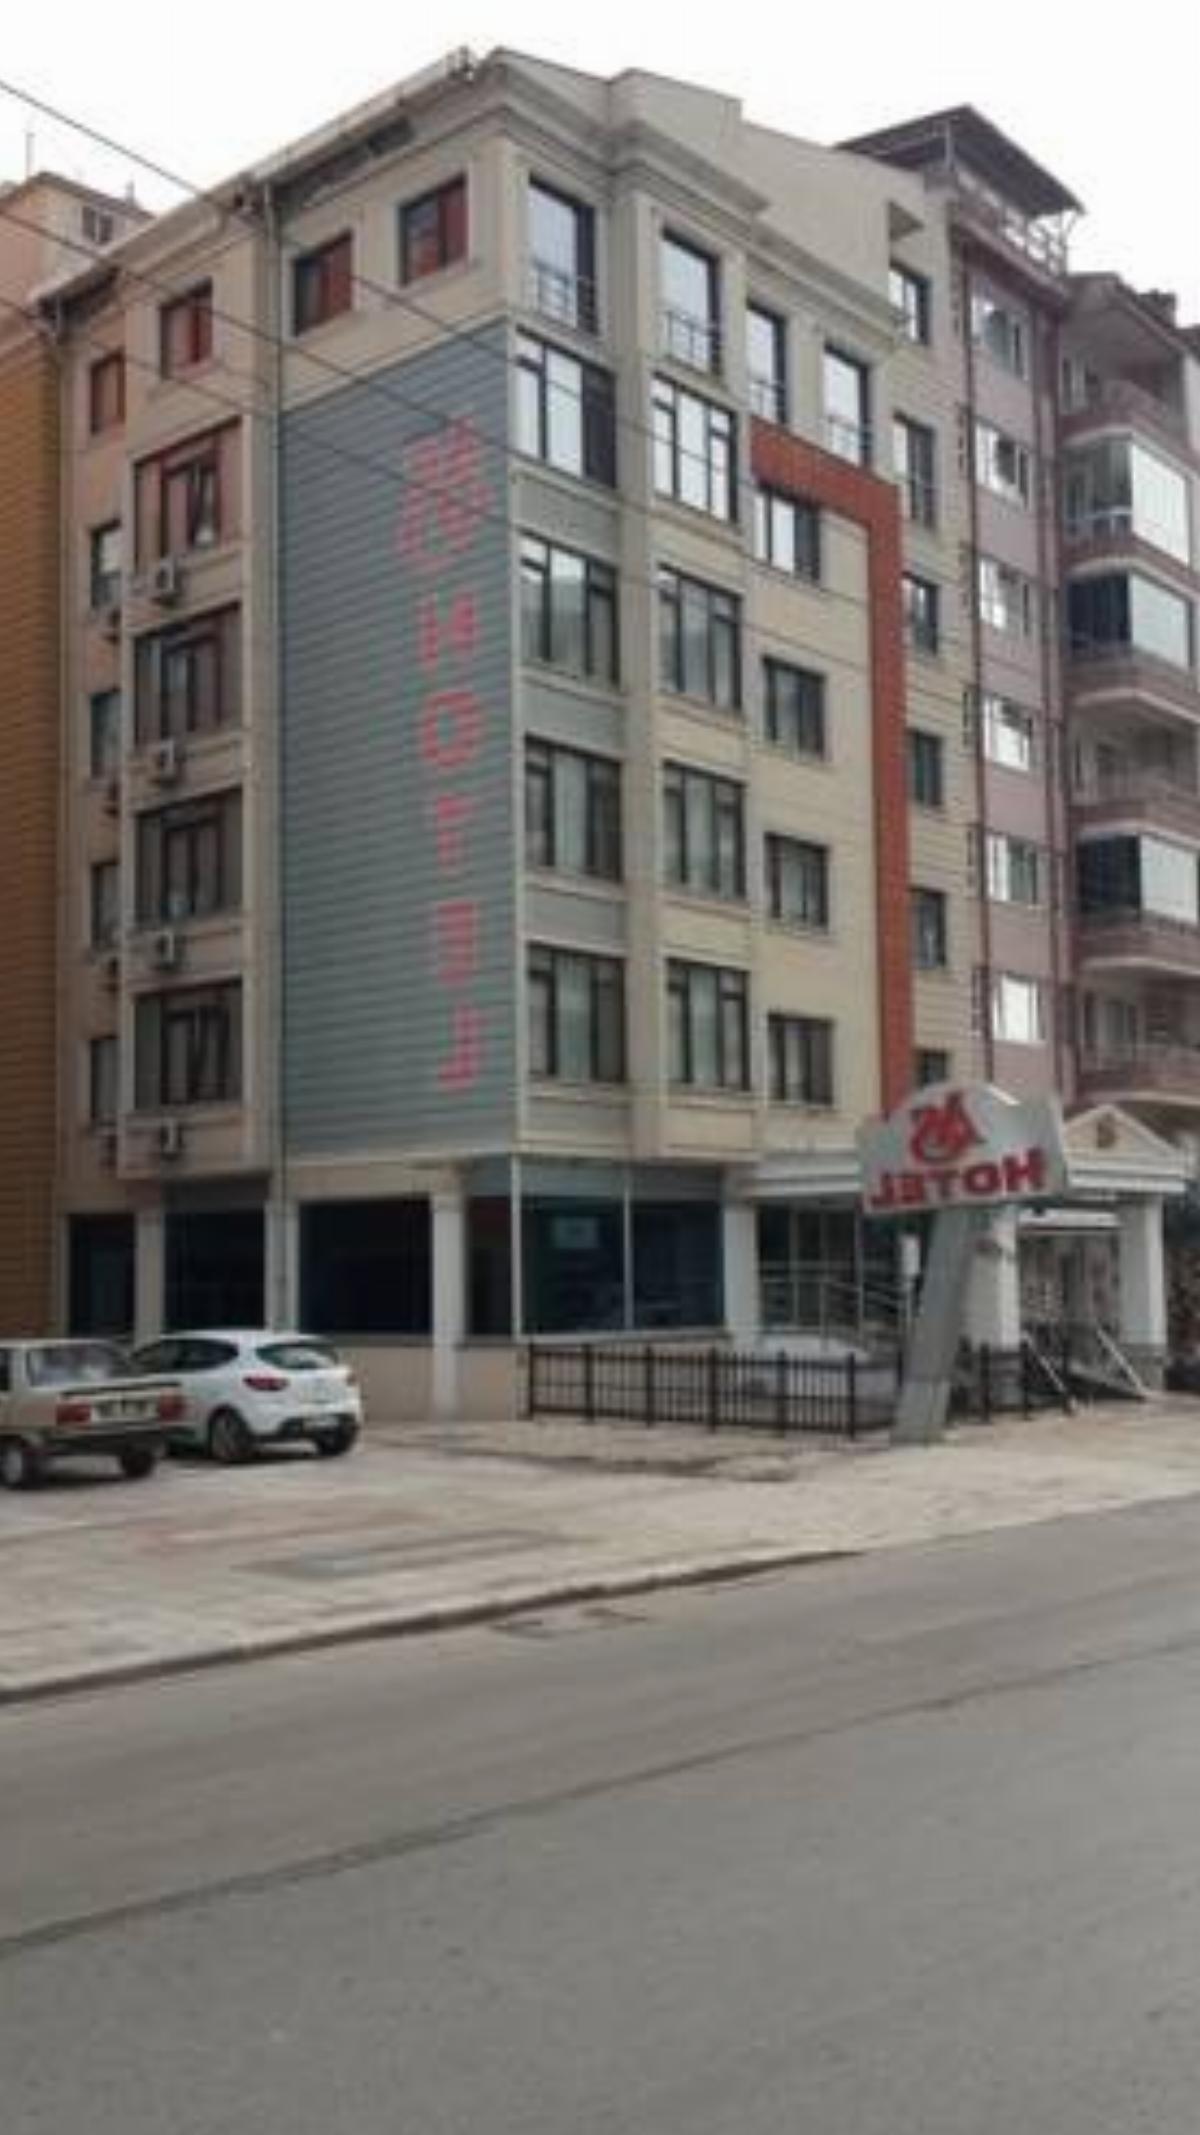 As Hotel Hotel Afyon Turkey